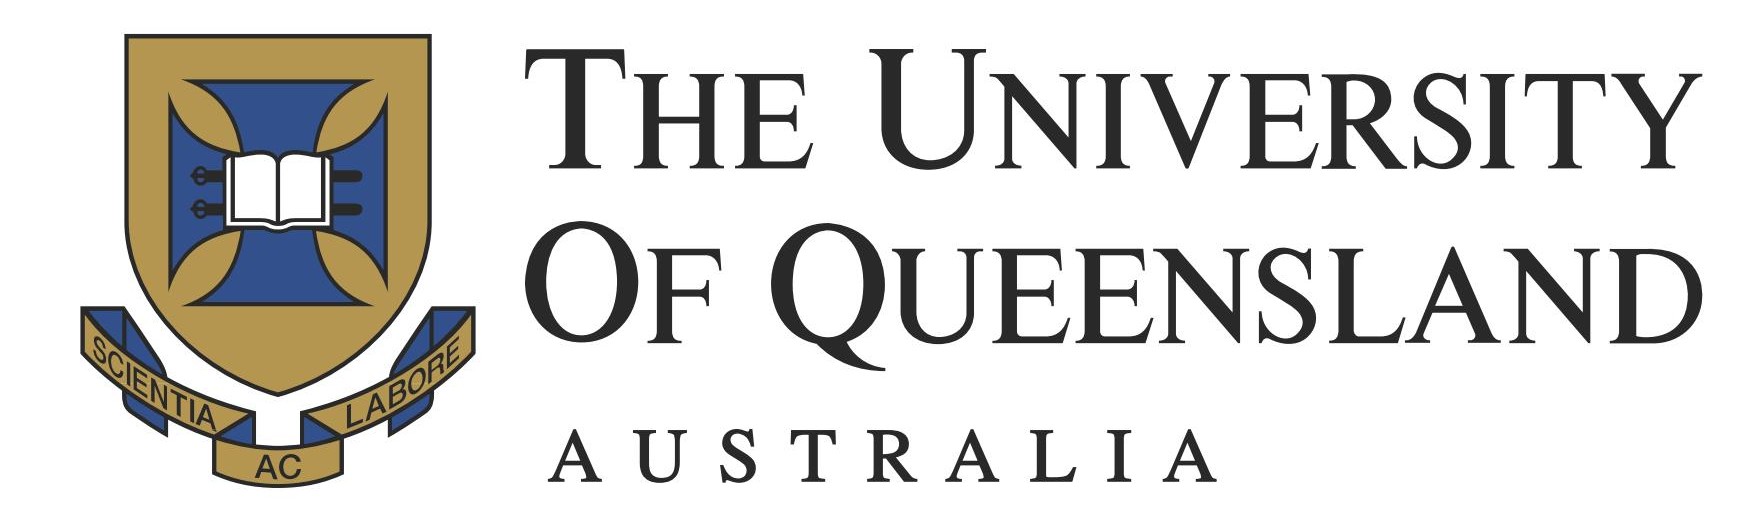 UQ-logo.jpg